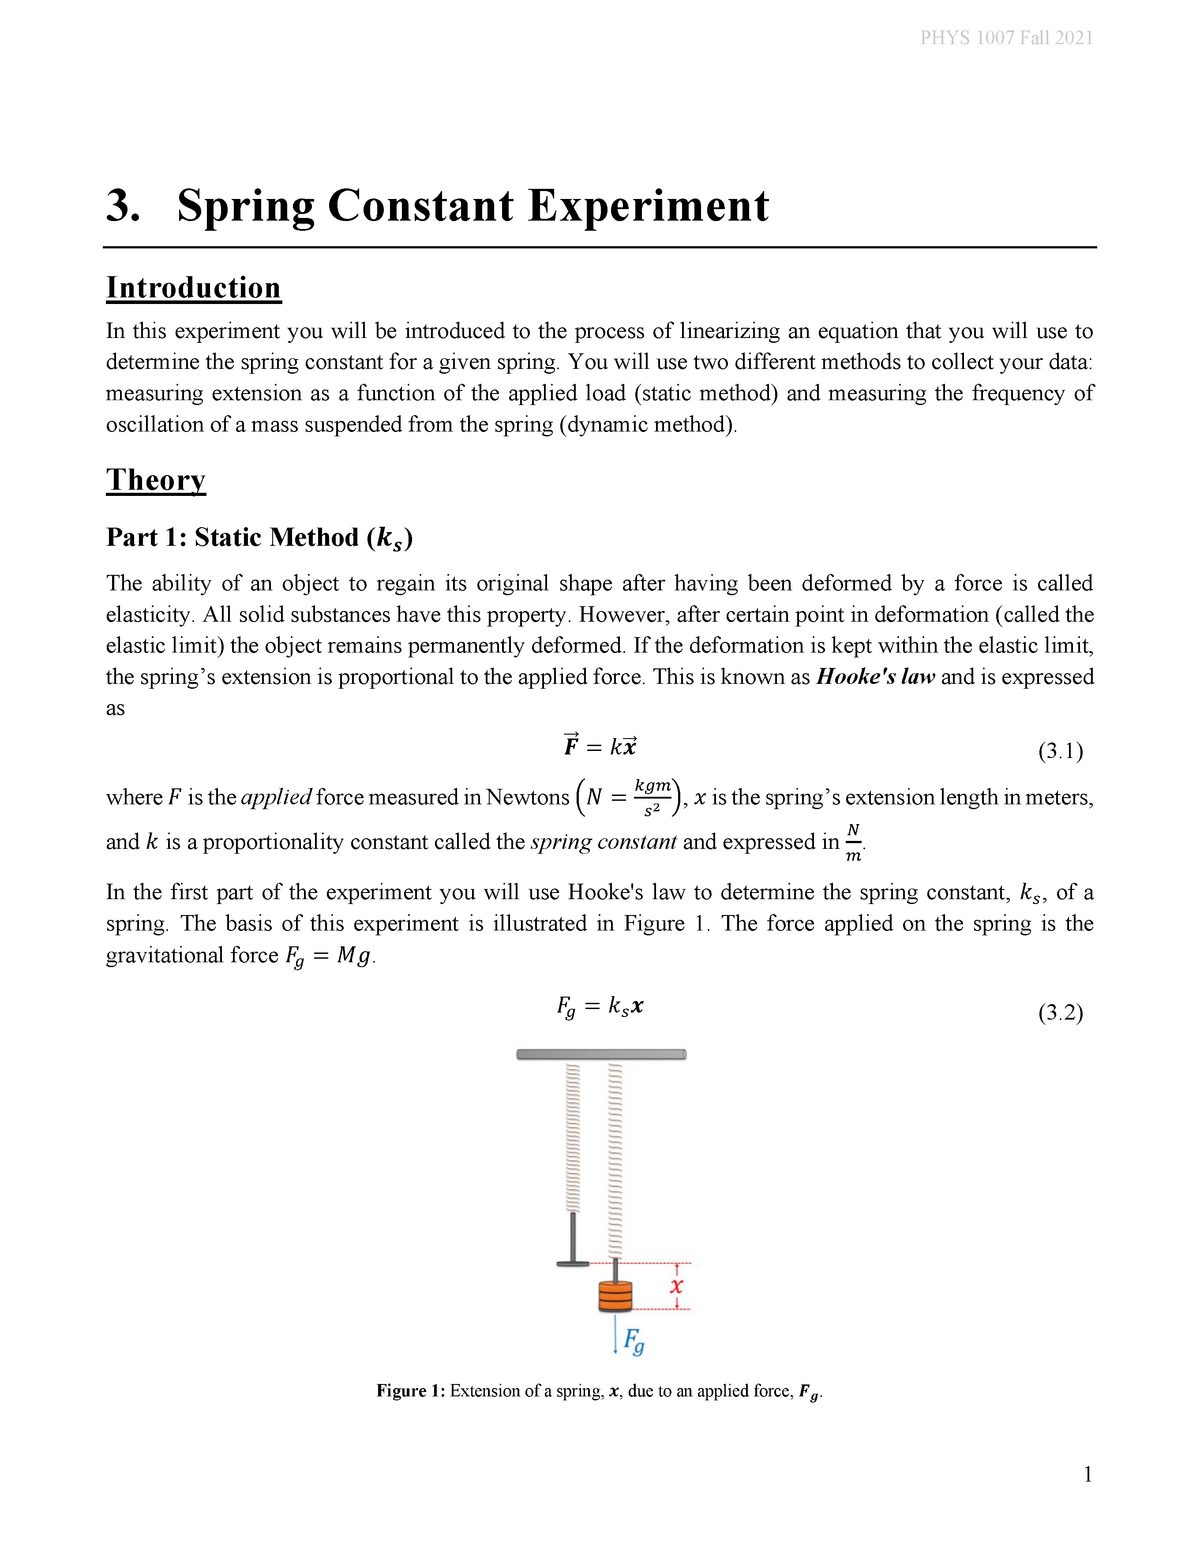 determine spring constant